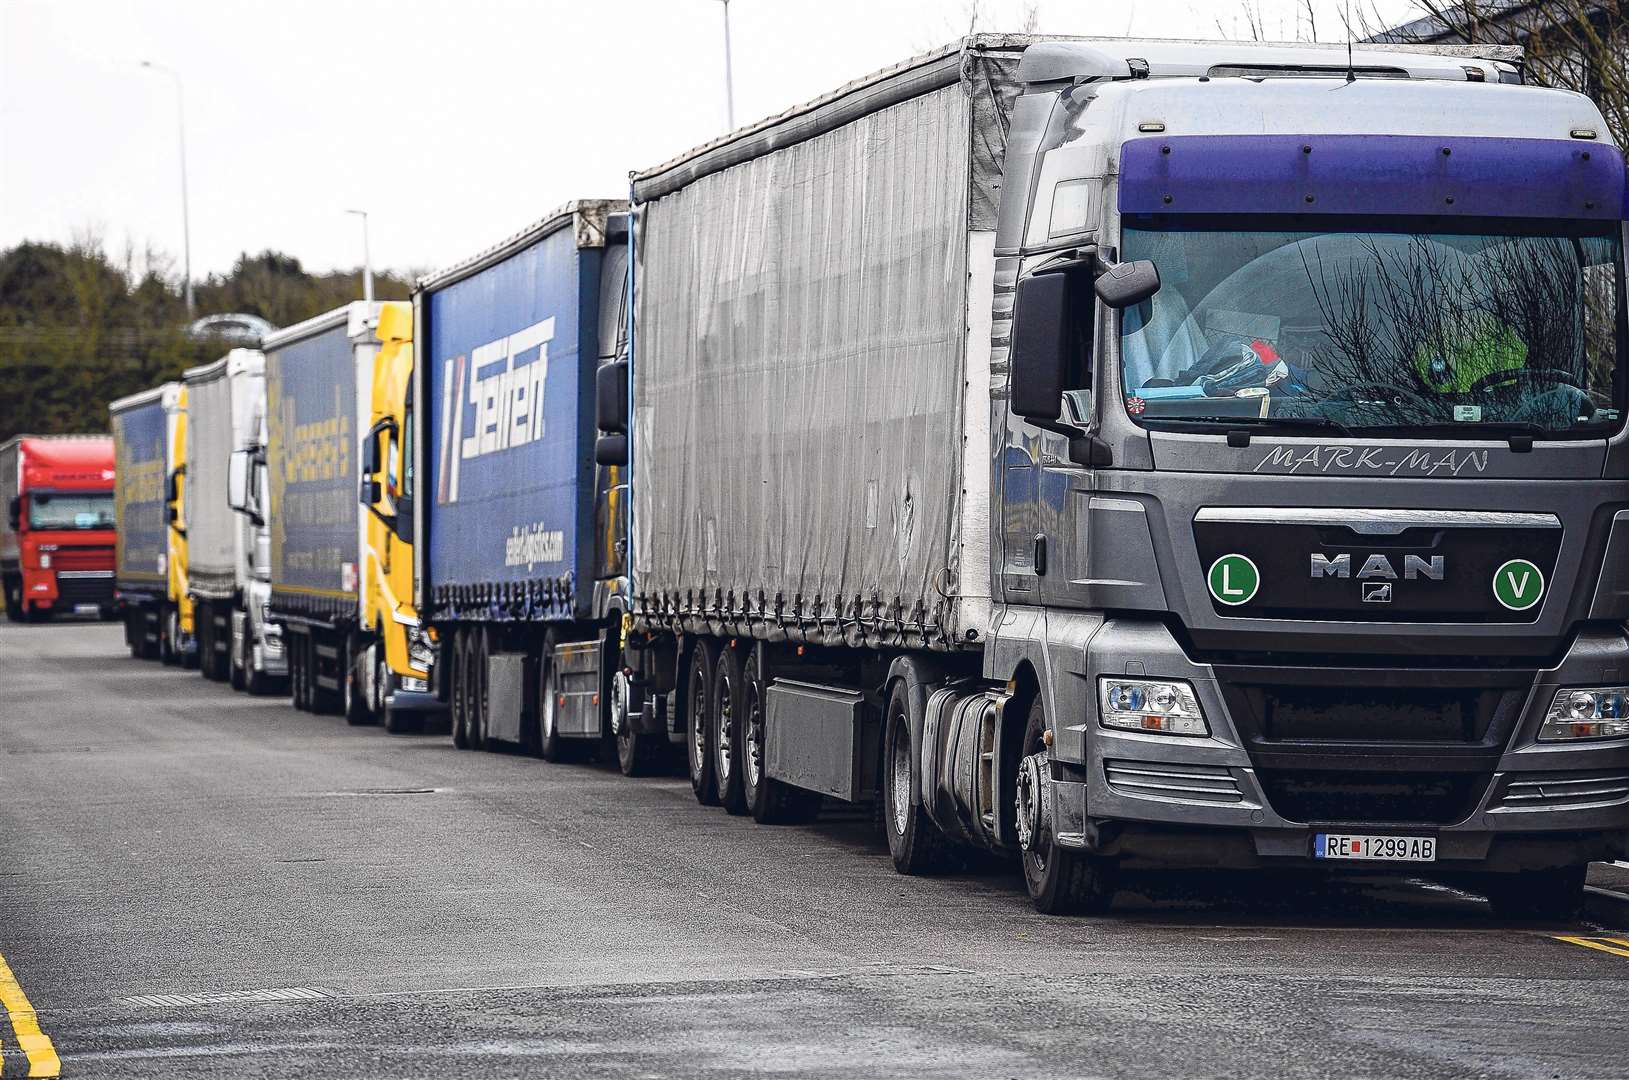 Lorries on an industrial estate in Ashford